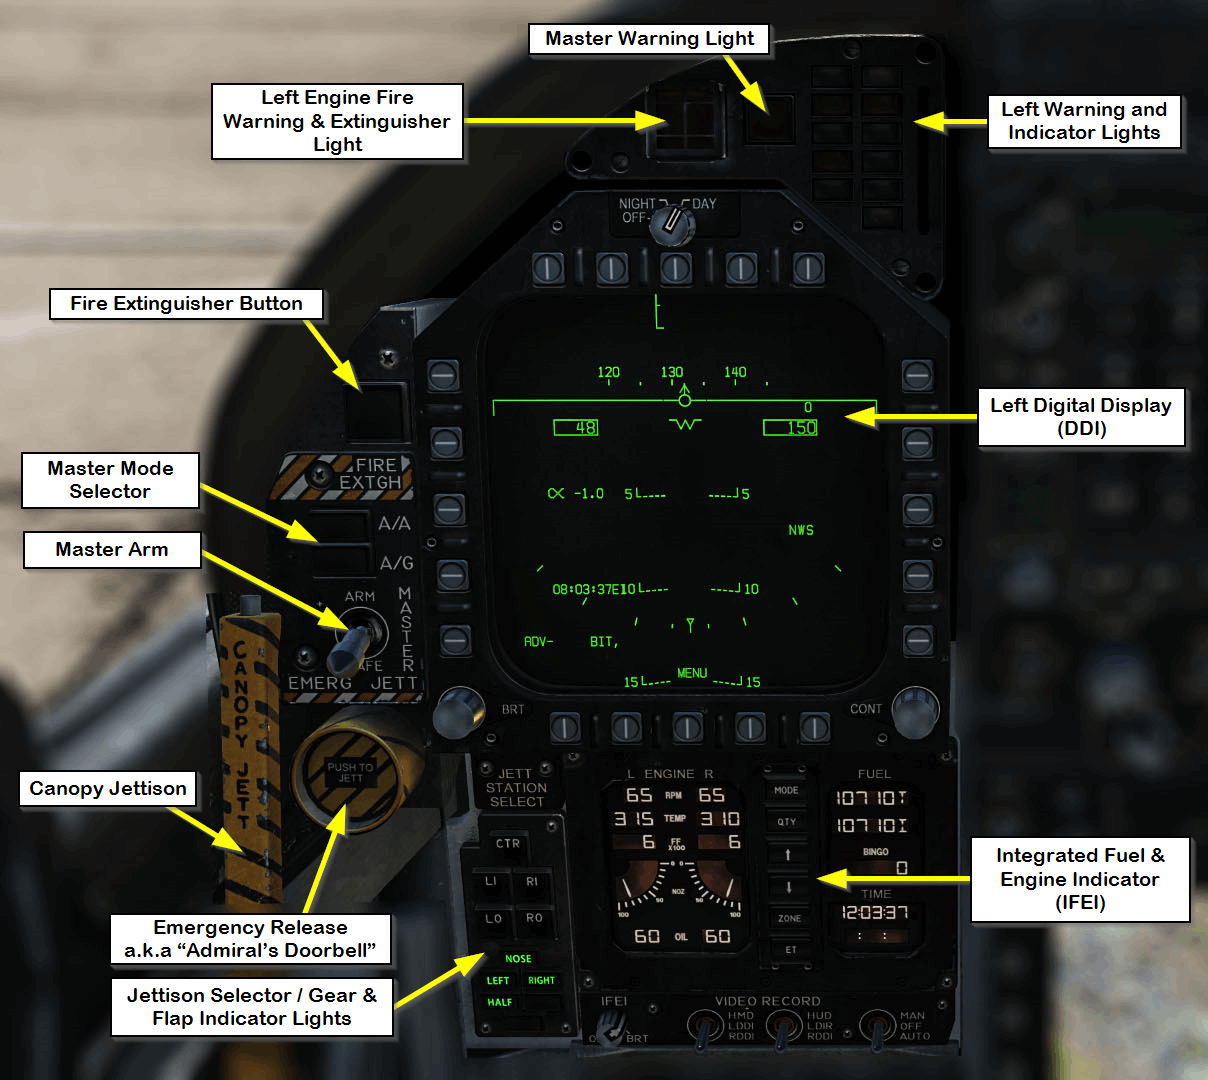 F/A-18C left instrument panel, Picture by kaltokri, Public Domain